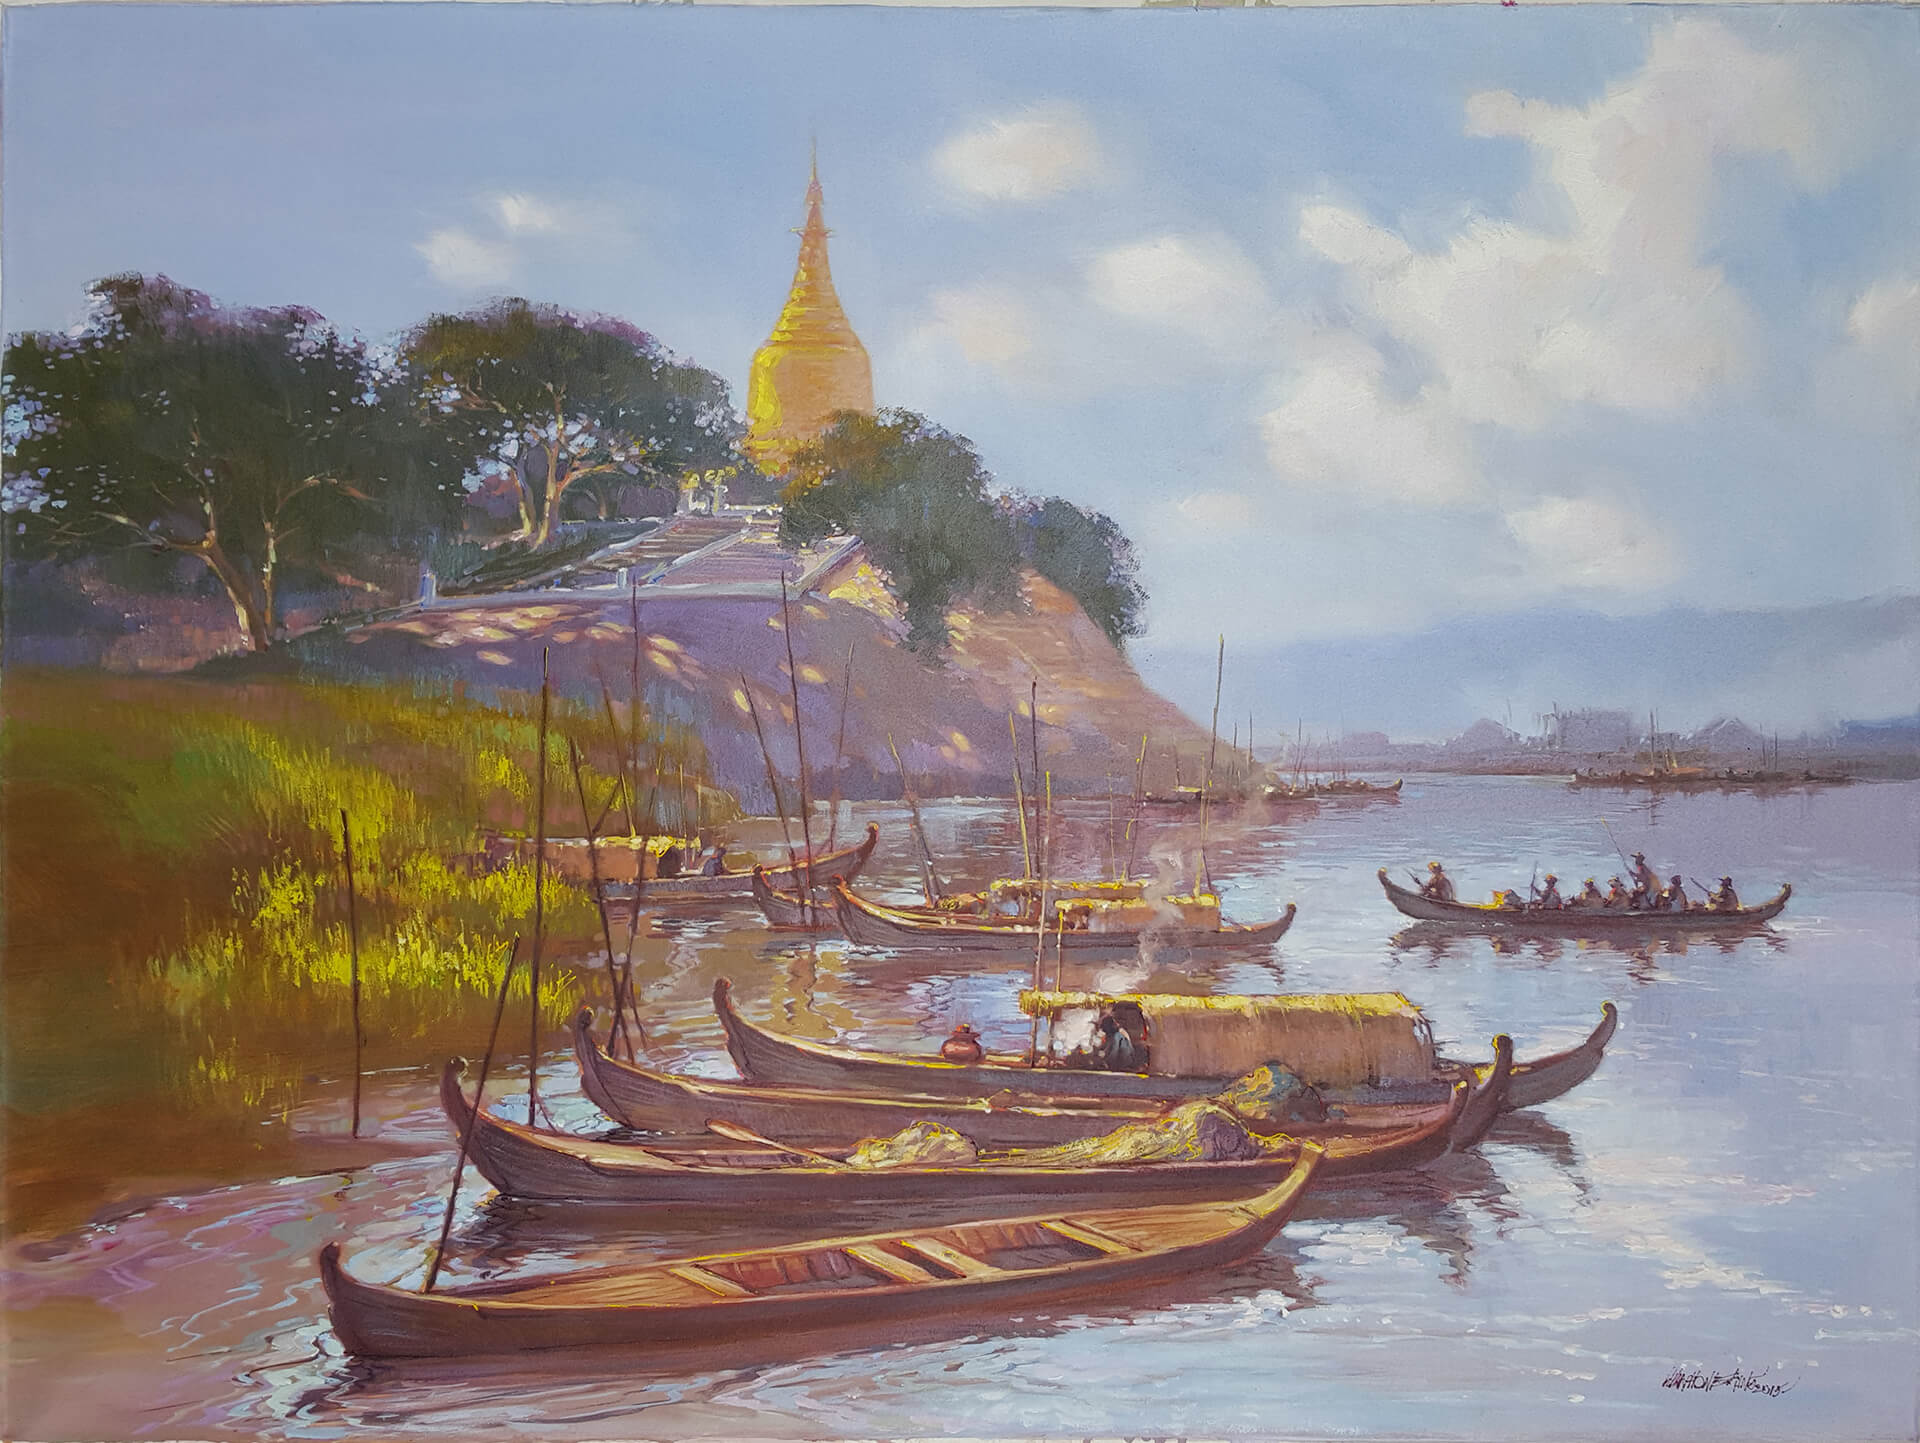 Hla-Phone-Aung-Lawkananda-Pagoda-(Bagan)-2015-36x48-Acrylic